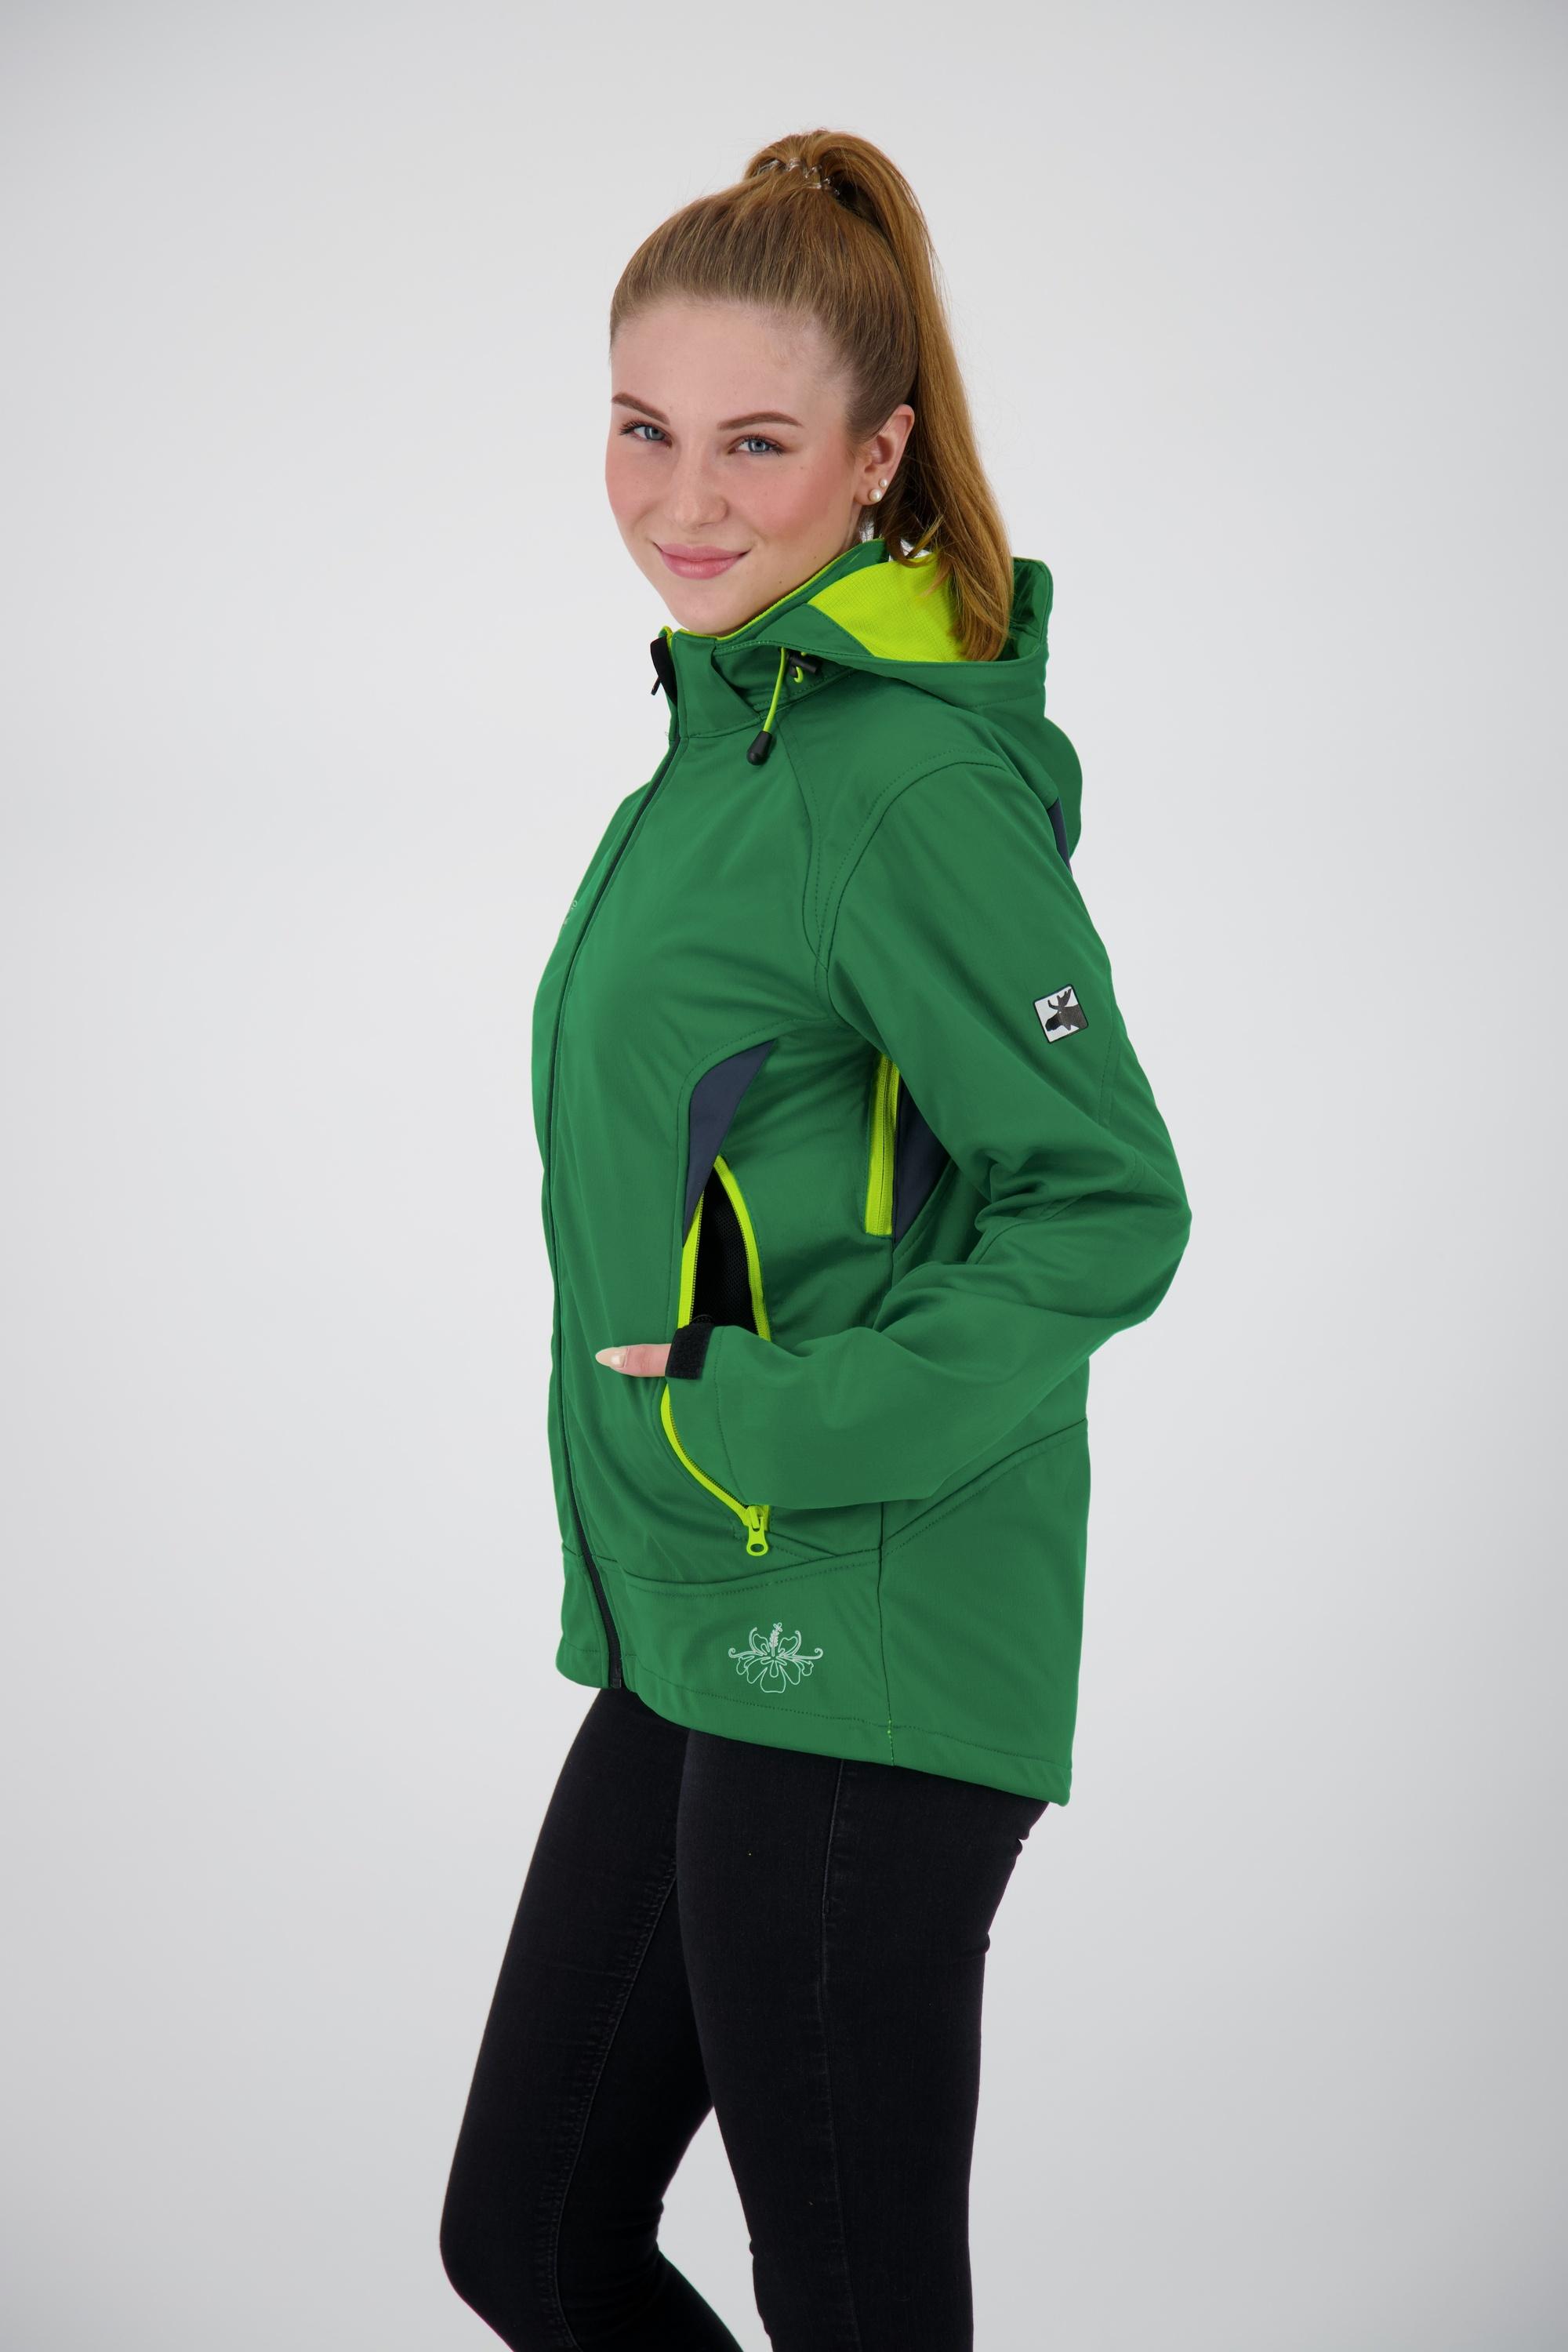 Softshelljacke Damen im Shop WOMEN active Downton Peak kaufen DEPROC Online SportScheck von grün